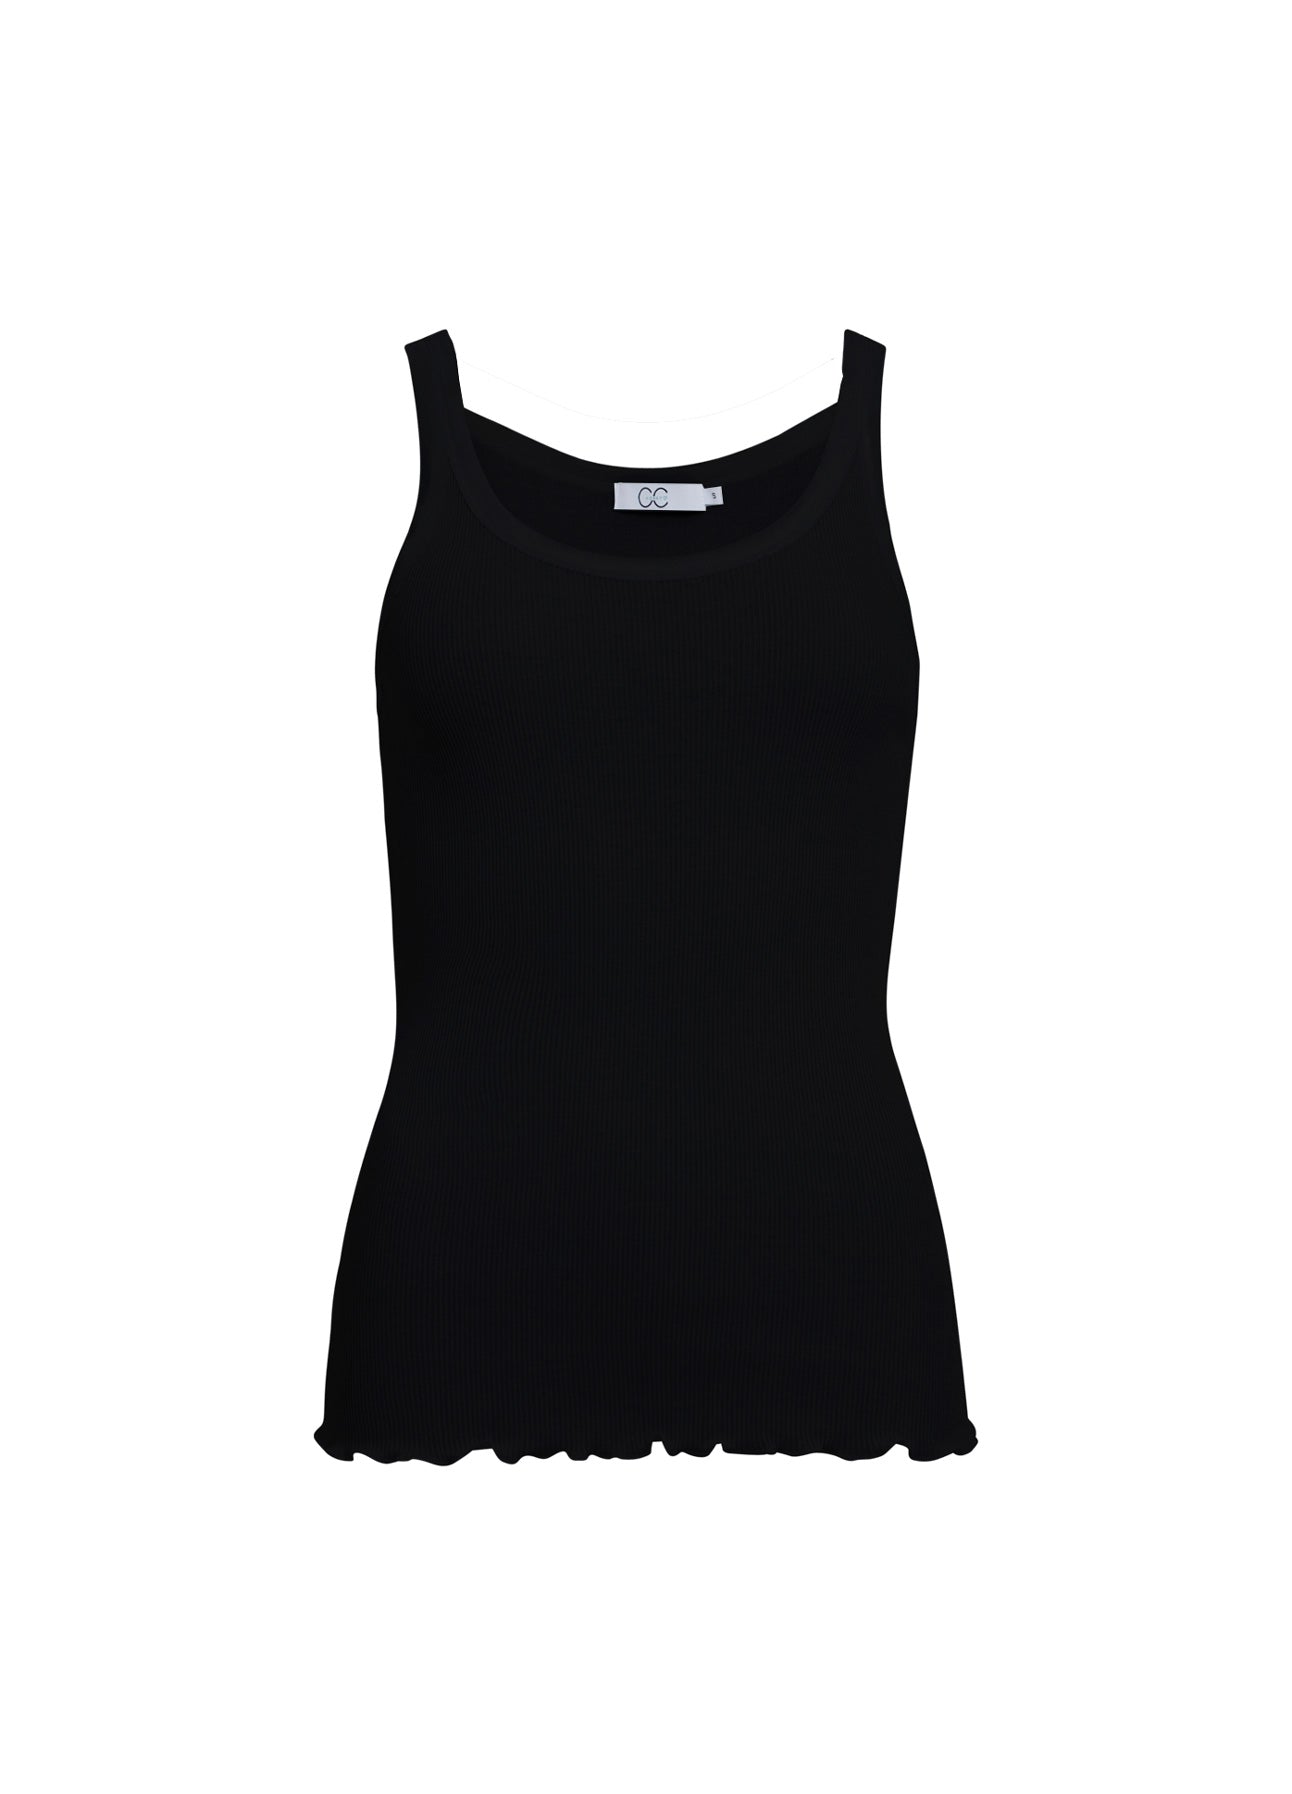 Cathalem Women'sSleeveless Tops Wireless Fabric Support Short Cami,Black XL